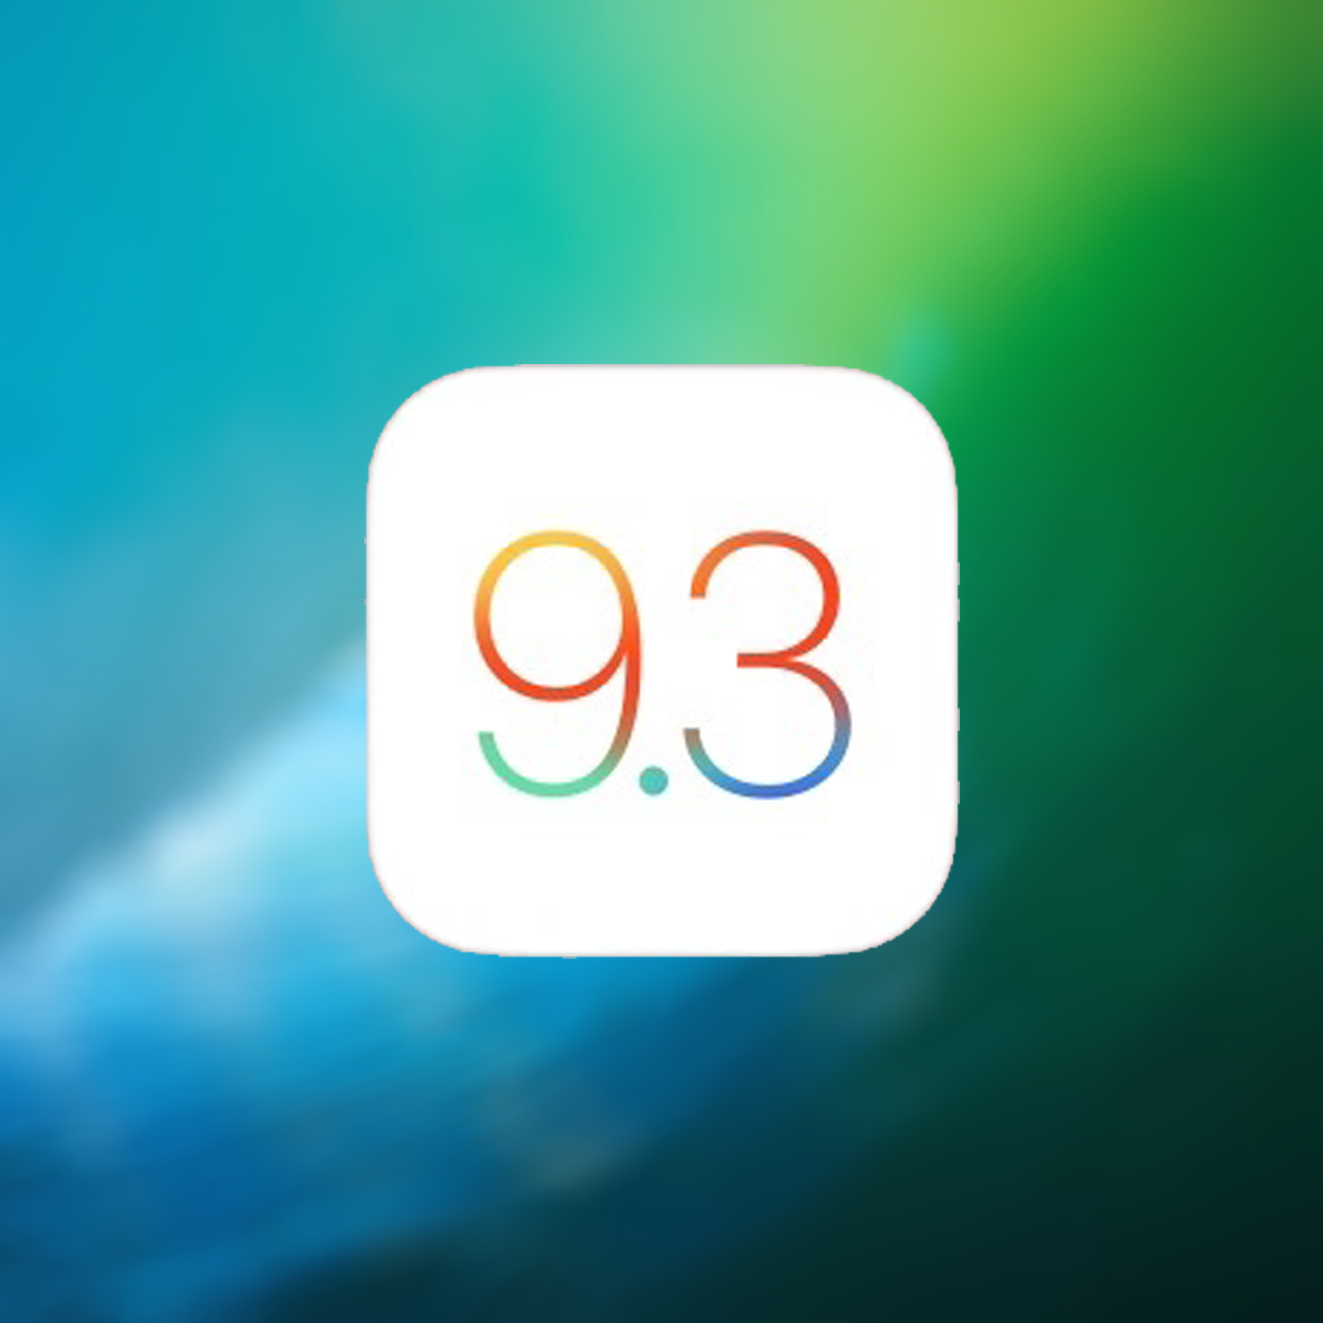 Belangrijke iOS 9.3.5 update beschikbaar